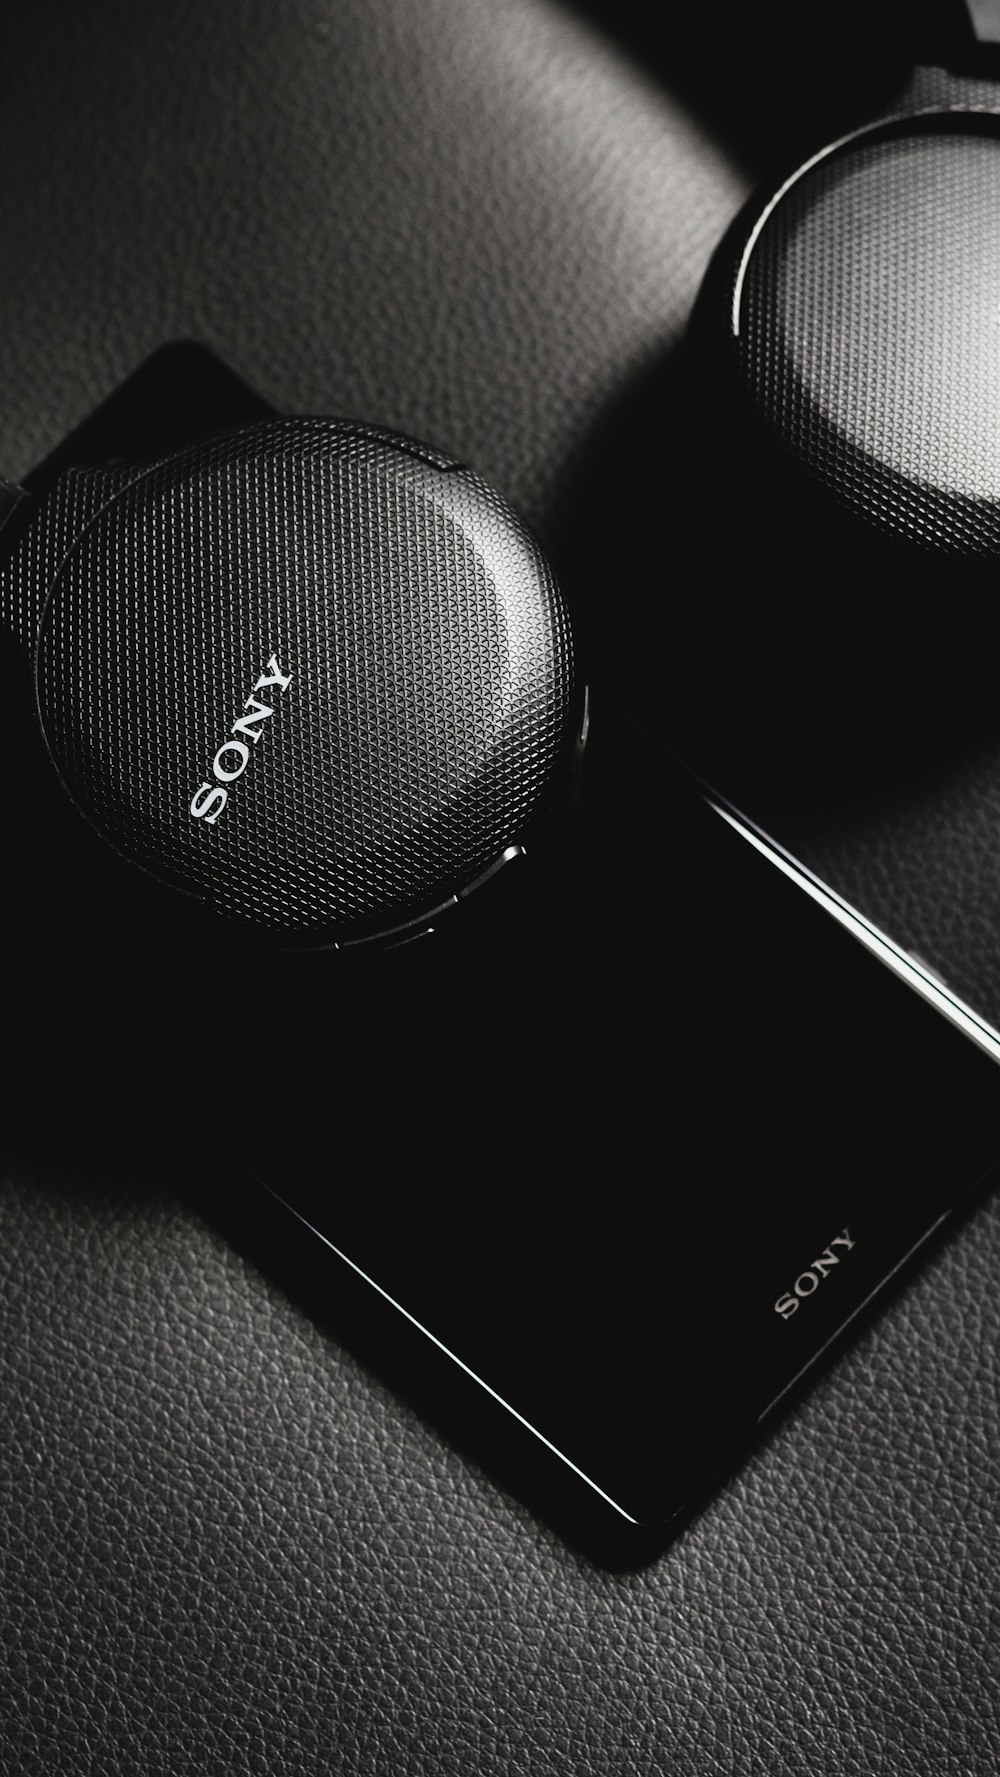 black sony portable speaker beside white smartphone